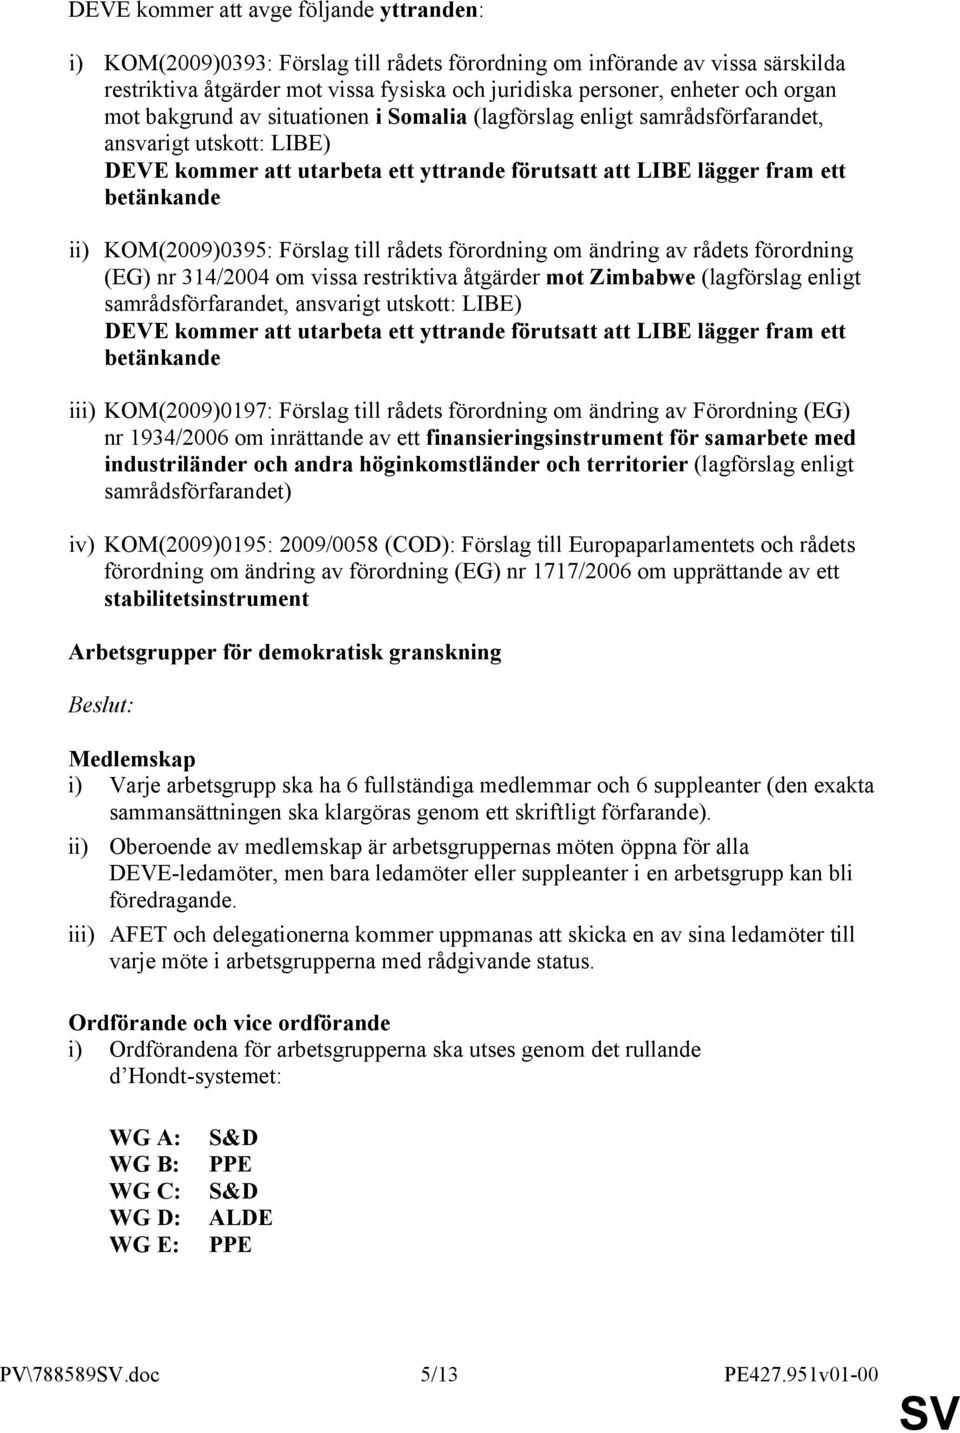 KOM(2009)0395: Förslag till rådets förordning om ändring av rådets förordning (EG) nr 314/2004 om vissa restriktiva åtgärder mot Zimbabwe (lagförslag enligt samrådsförfarandet, ansvarigt utskott: